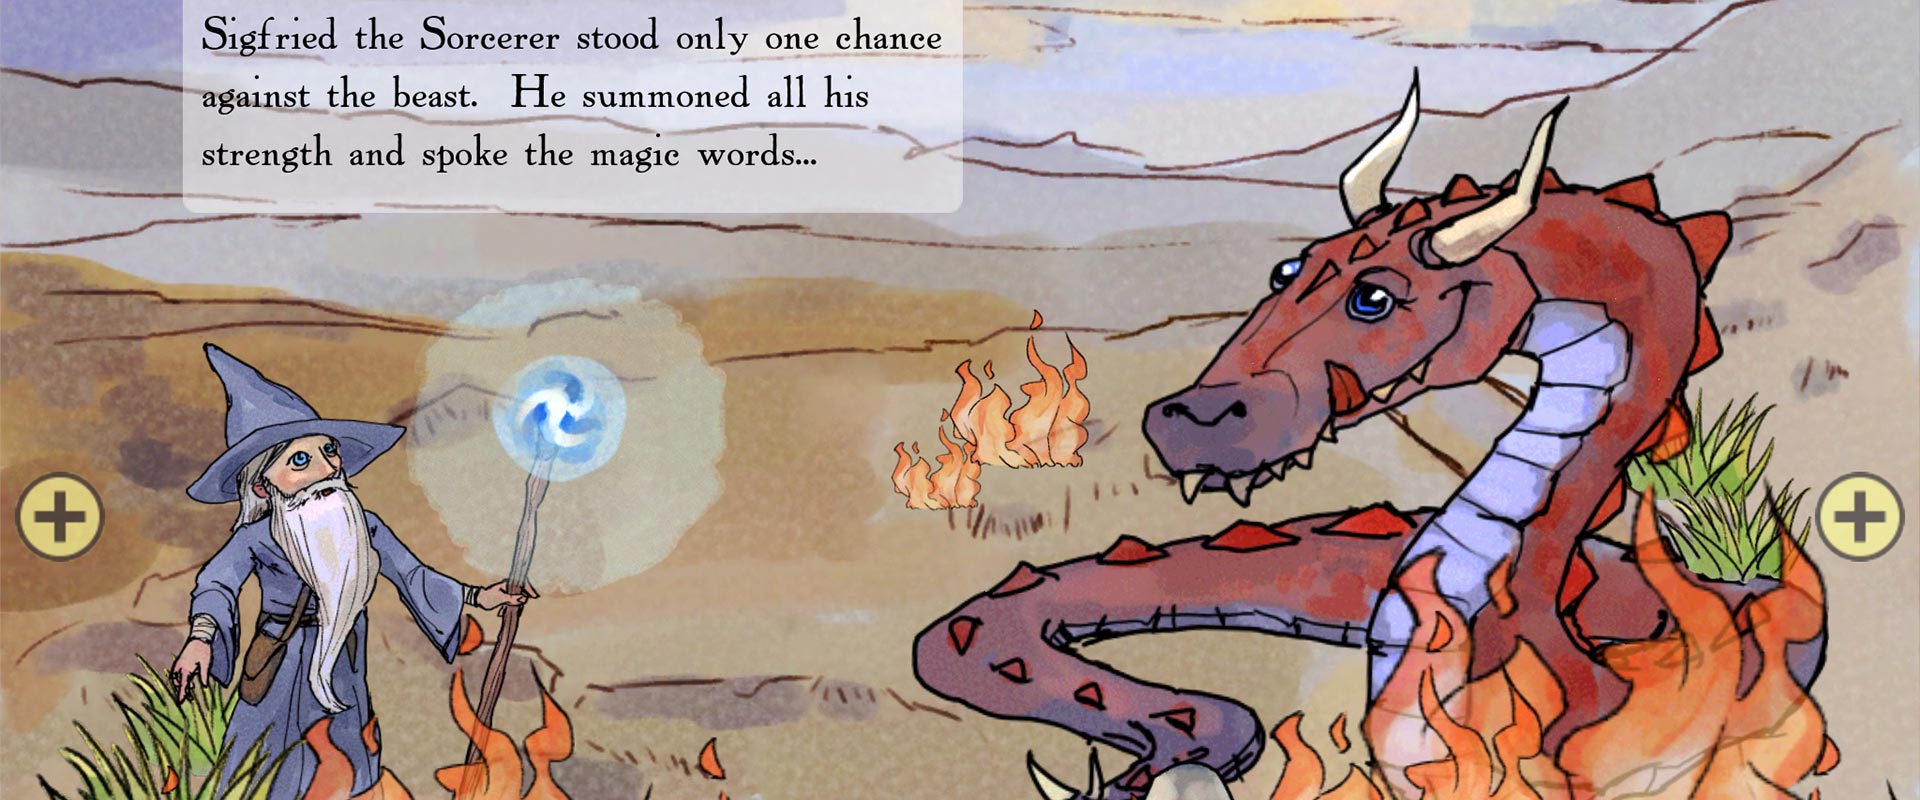 StorySmith Fantasy Story Maker for iPad